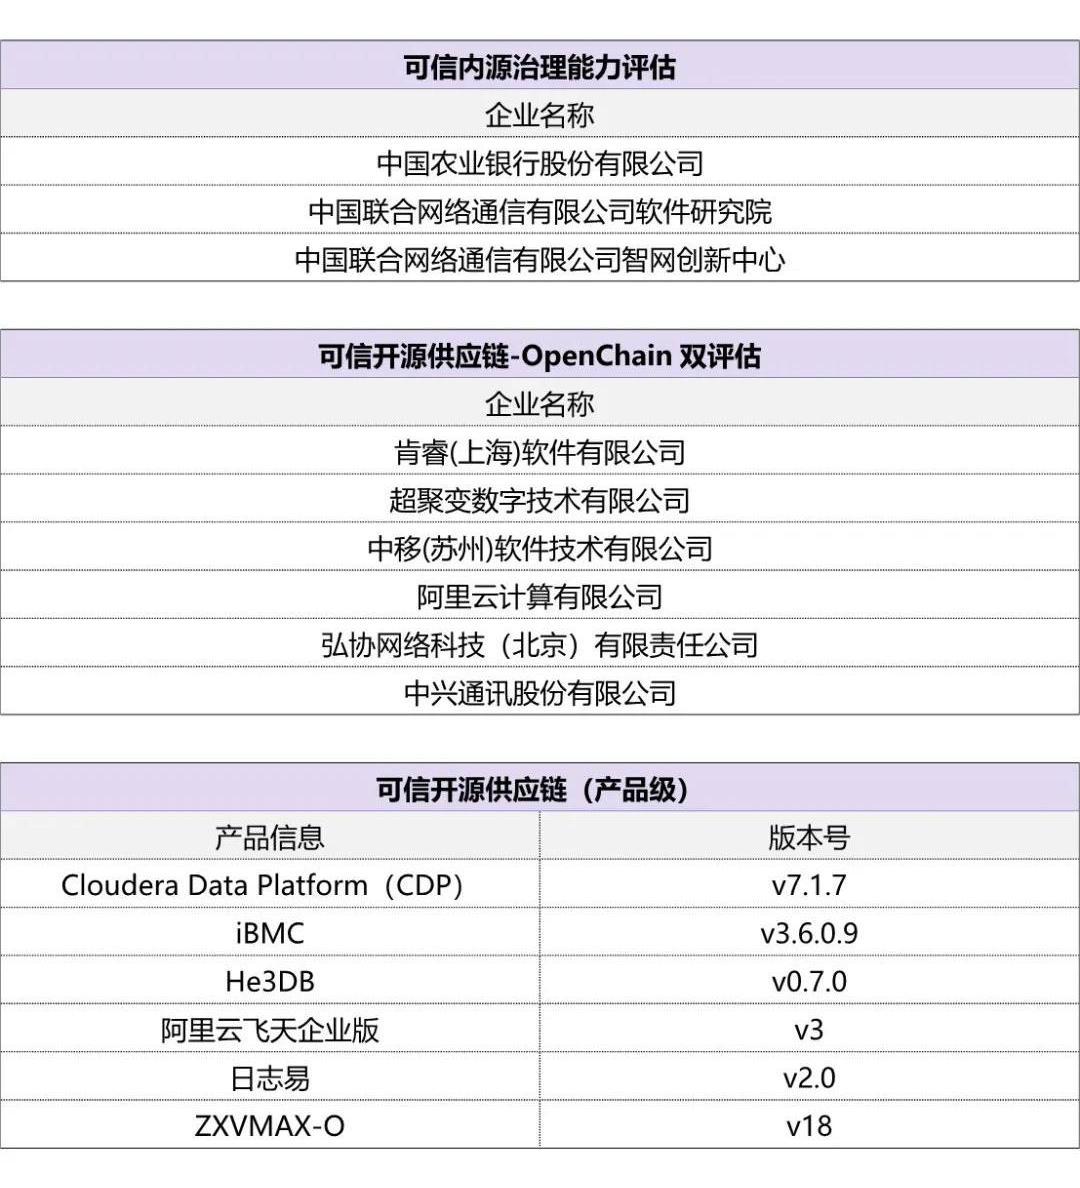 中国信通院发布2023可信开源系列评估结果_开源项目_07